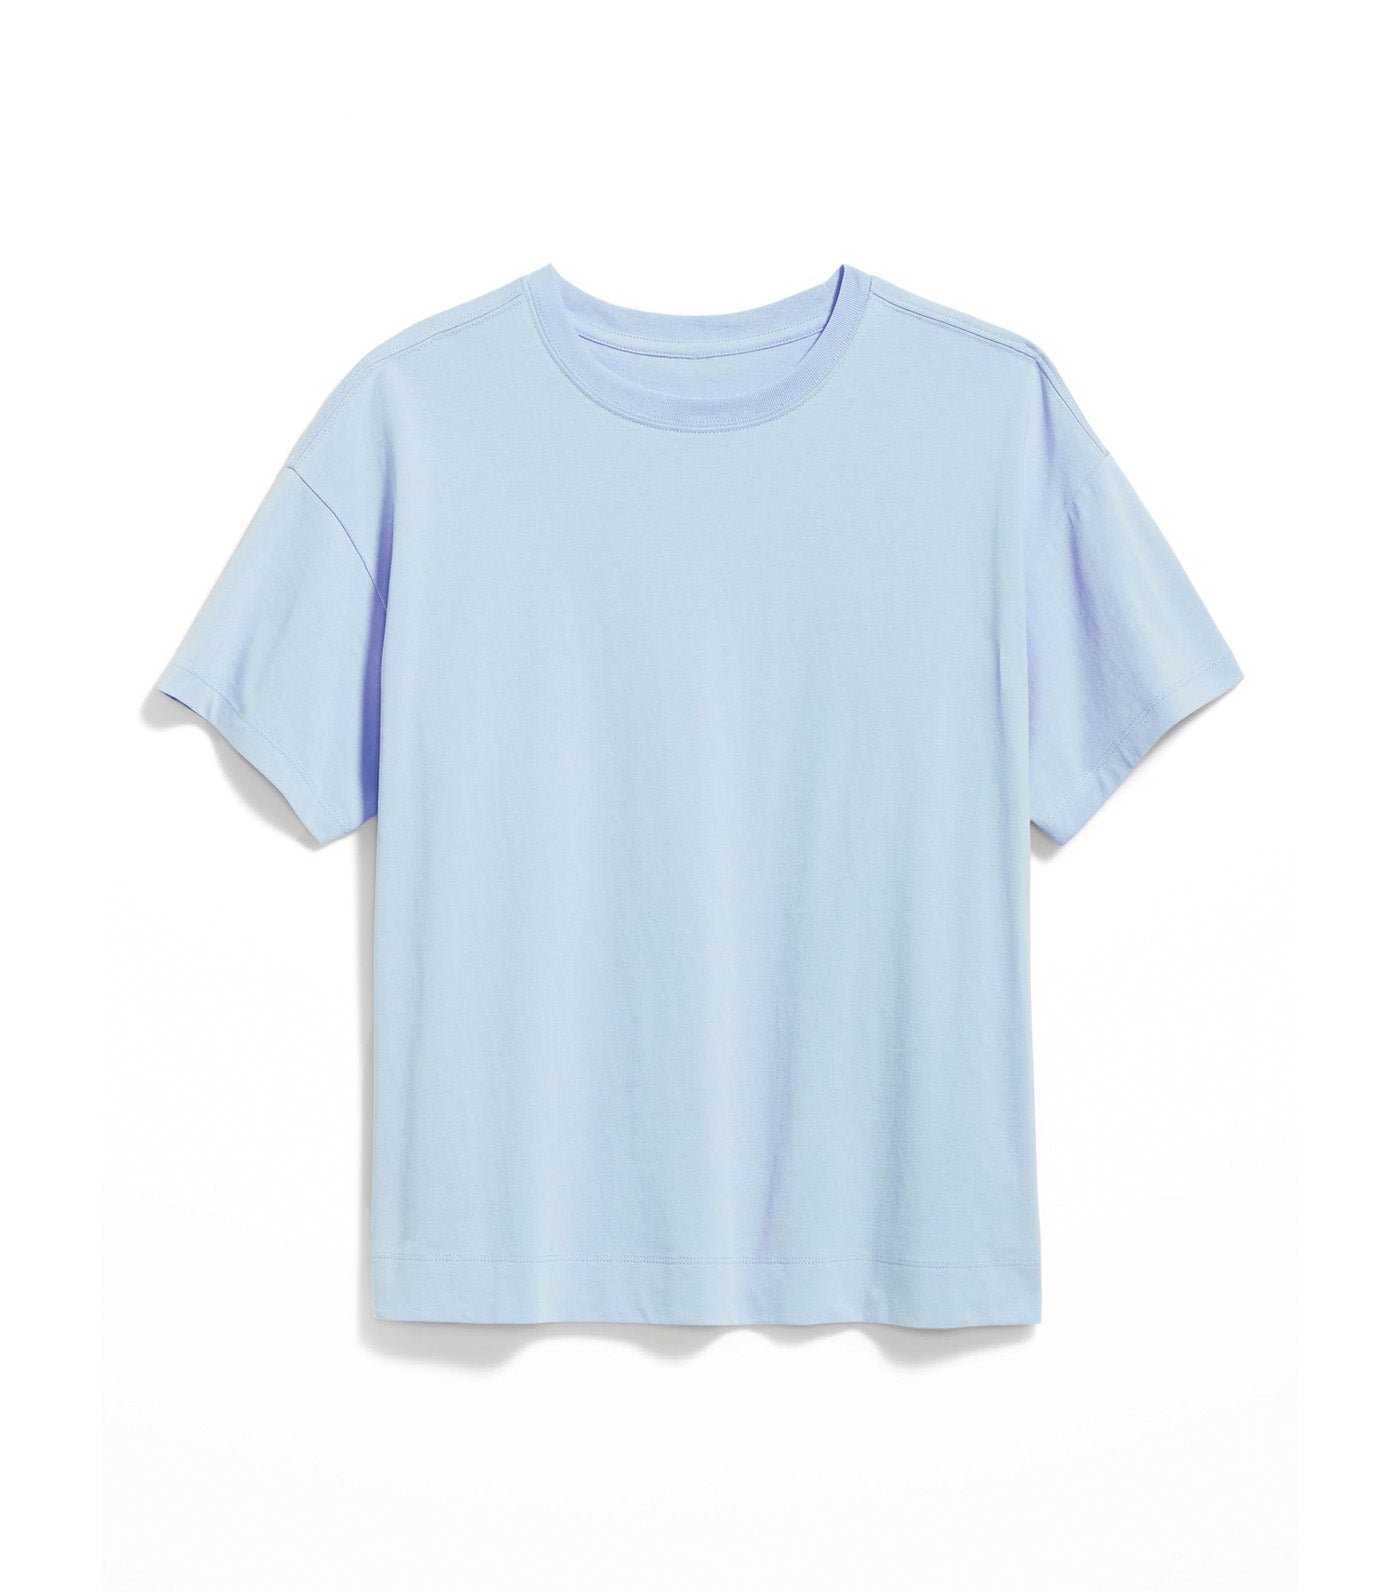 Vintage T-Shirt For Women Cashmere Blue